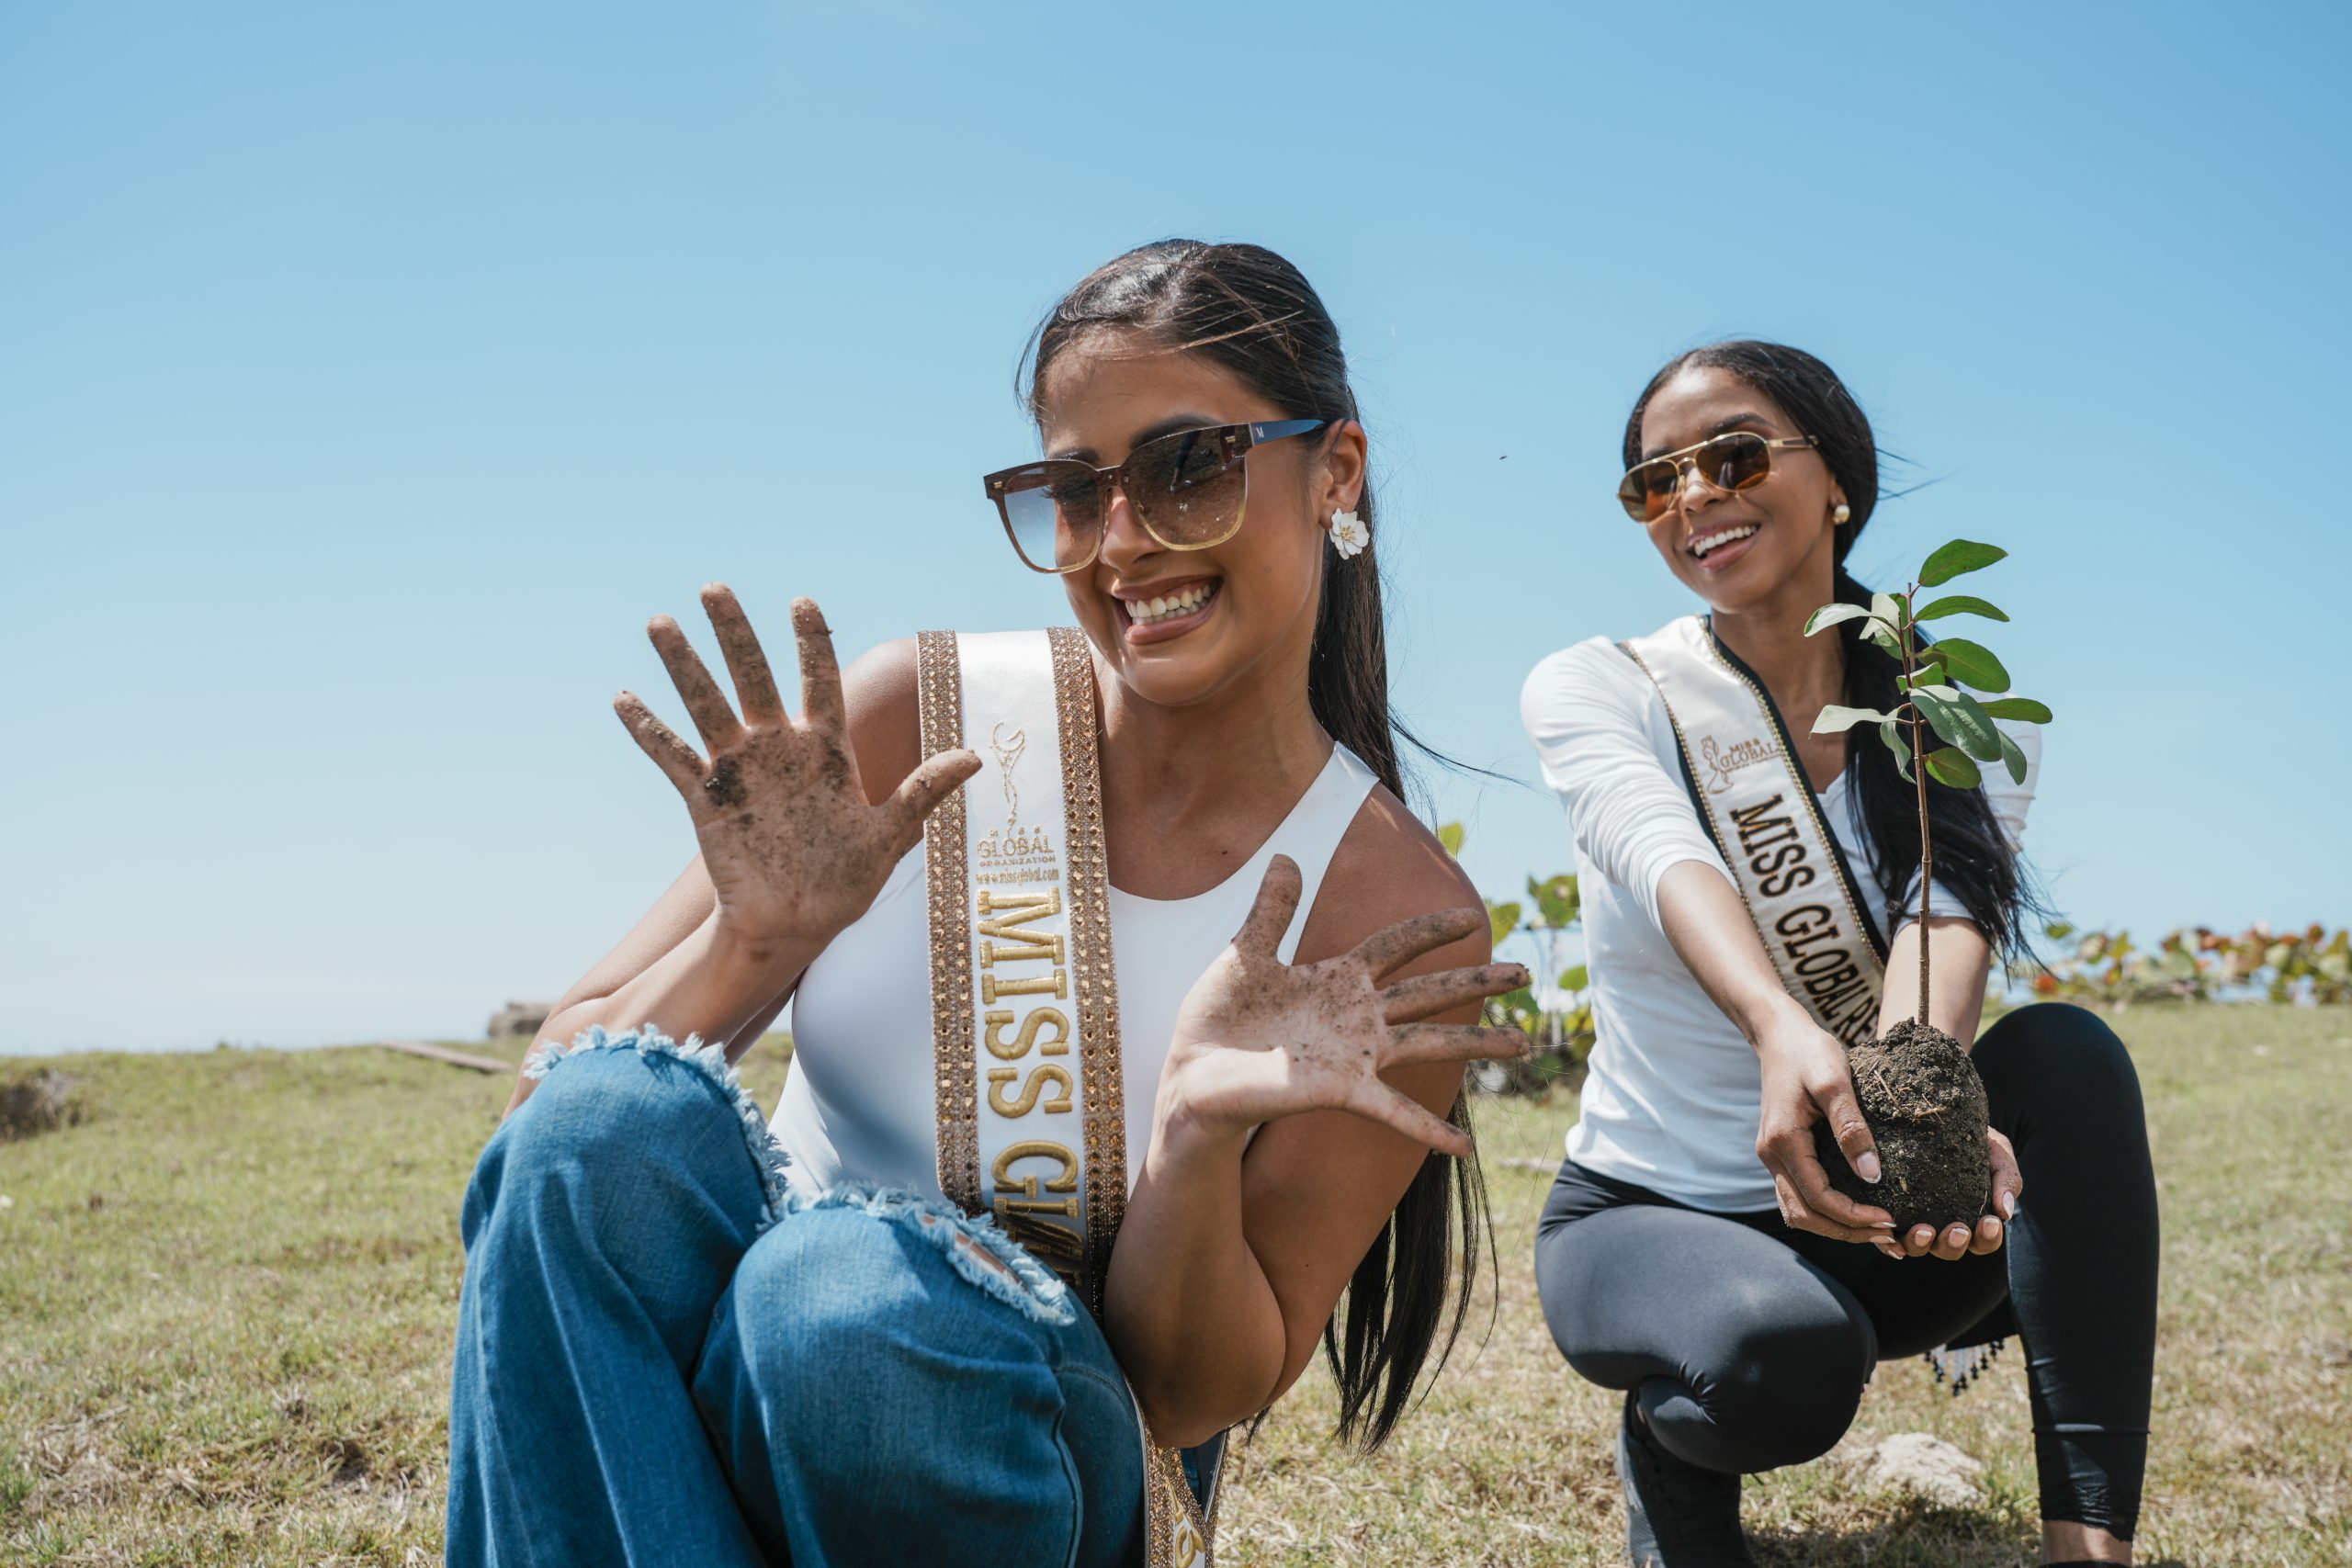 Medio Ambiente y la organización Miss Global República Dominicana realizan jornada de plantación de mangles en el Parque Ecológico de Nigua